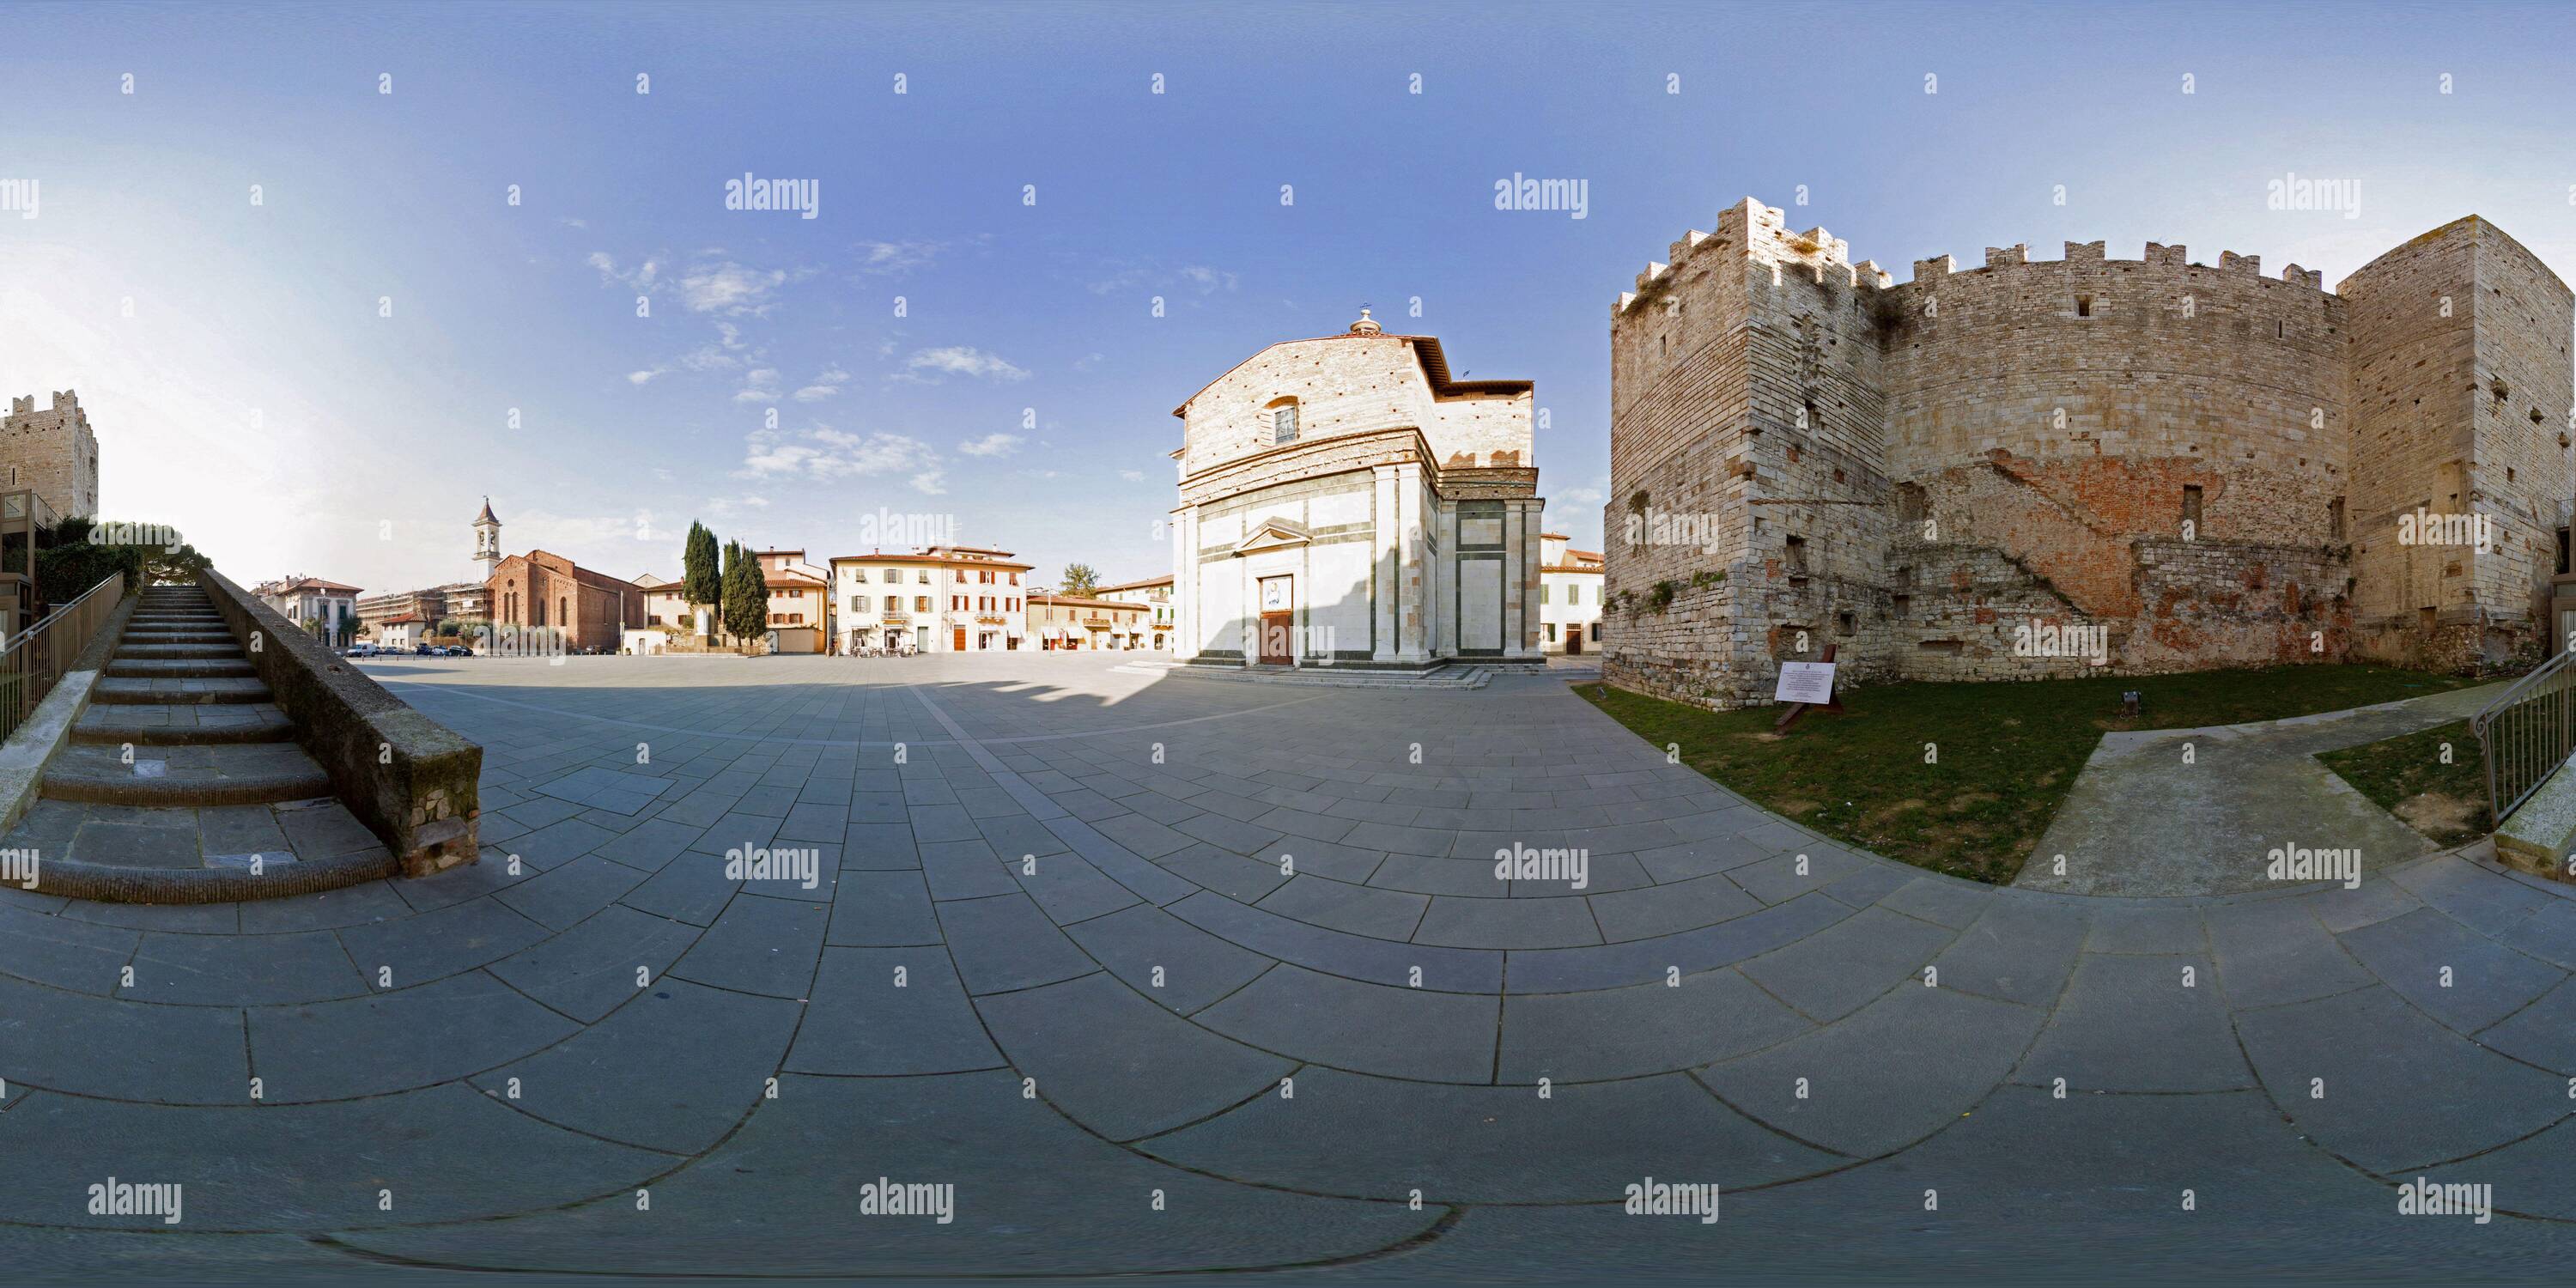 360 Grad Panorama Ansicht von Piazza delle Carceri in Prato mit dem mittelalterlichen Schloss von Friedrich II., dem Heiligen römischen Kaiser und der Kirche S.Maria delle Carceri.